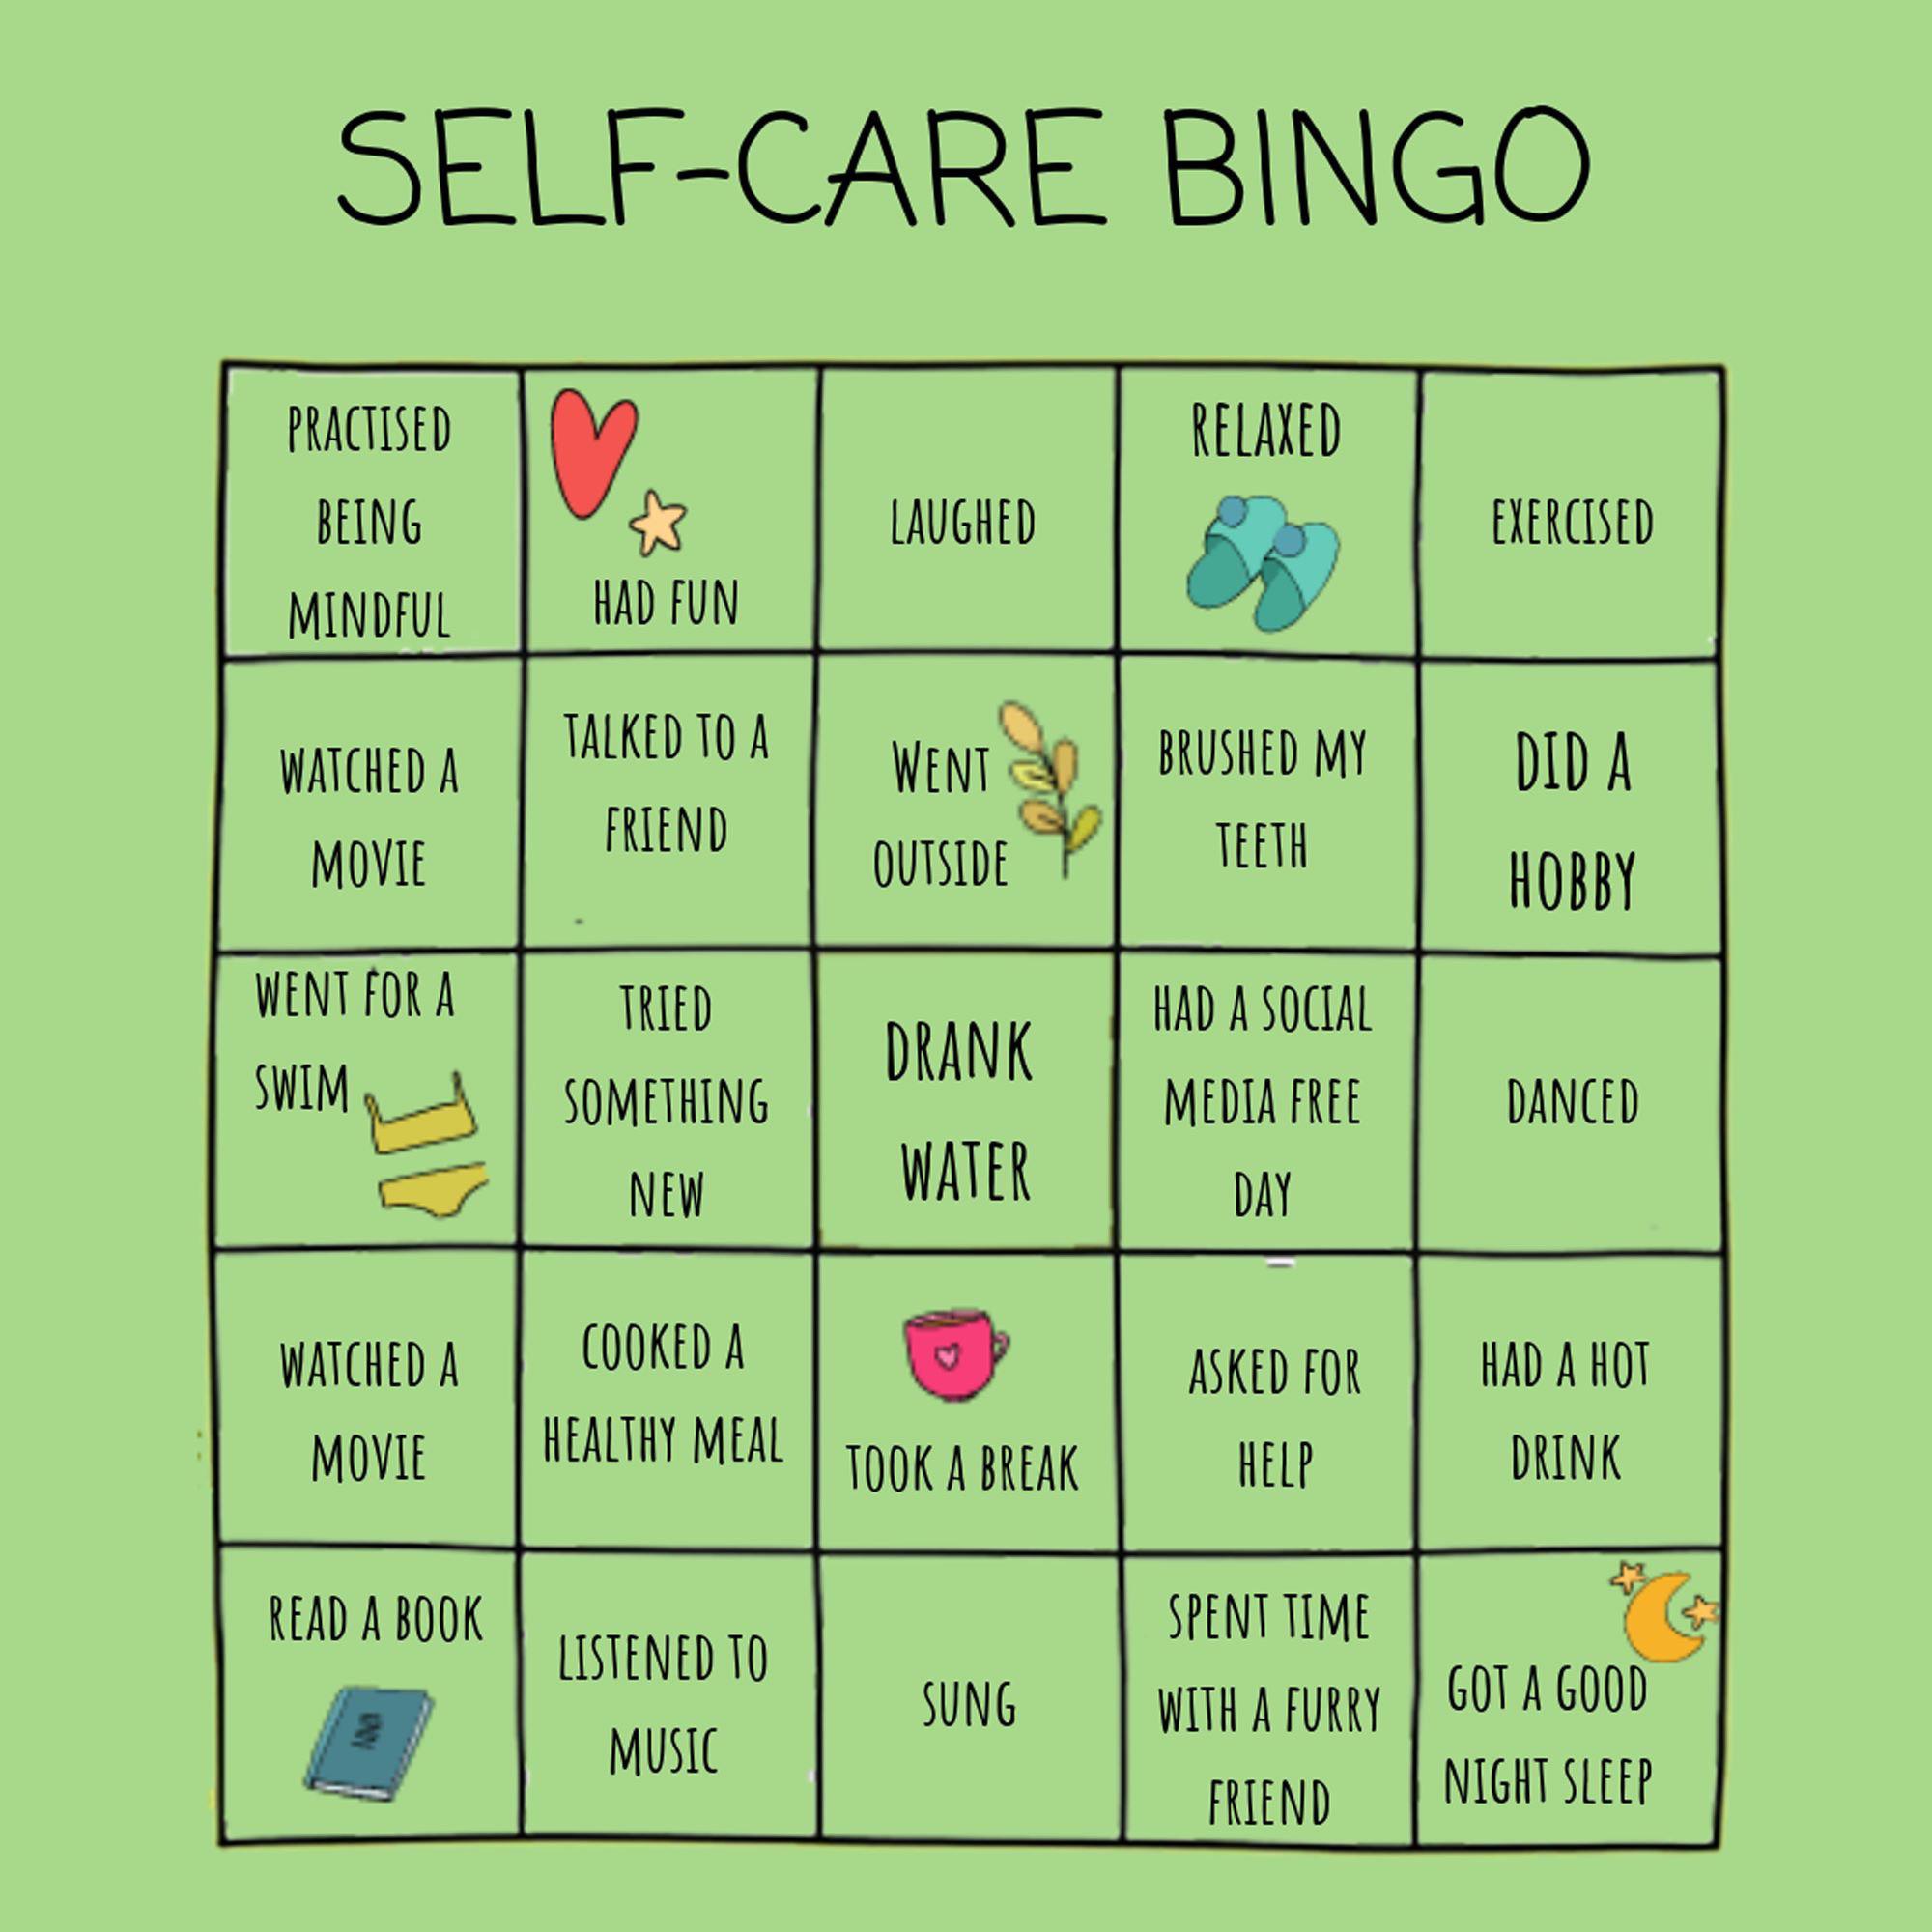 Take care of yourself, Bingo. 